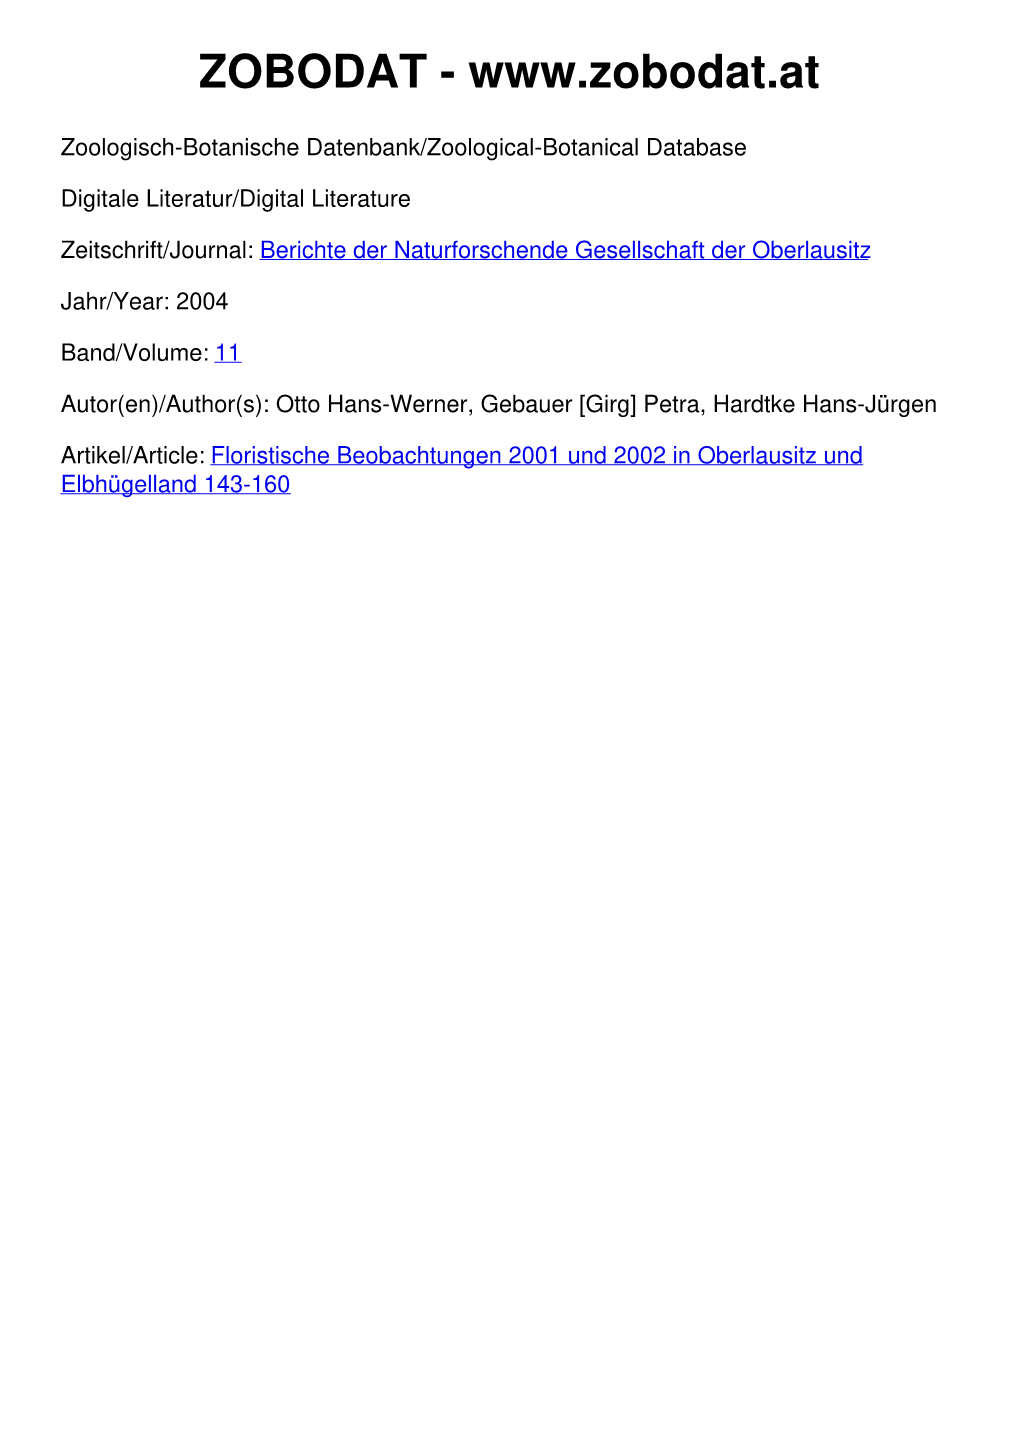 Floristische Beobachtungen 2001 Und 2002 in Oberlausitz Und Elbhügelland 143-160 © Naturforschende Gesellschaft Der Oberlausitz E.V